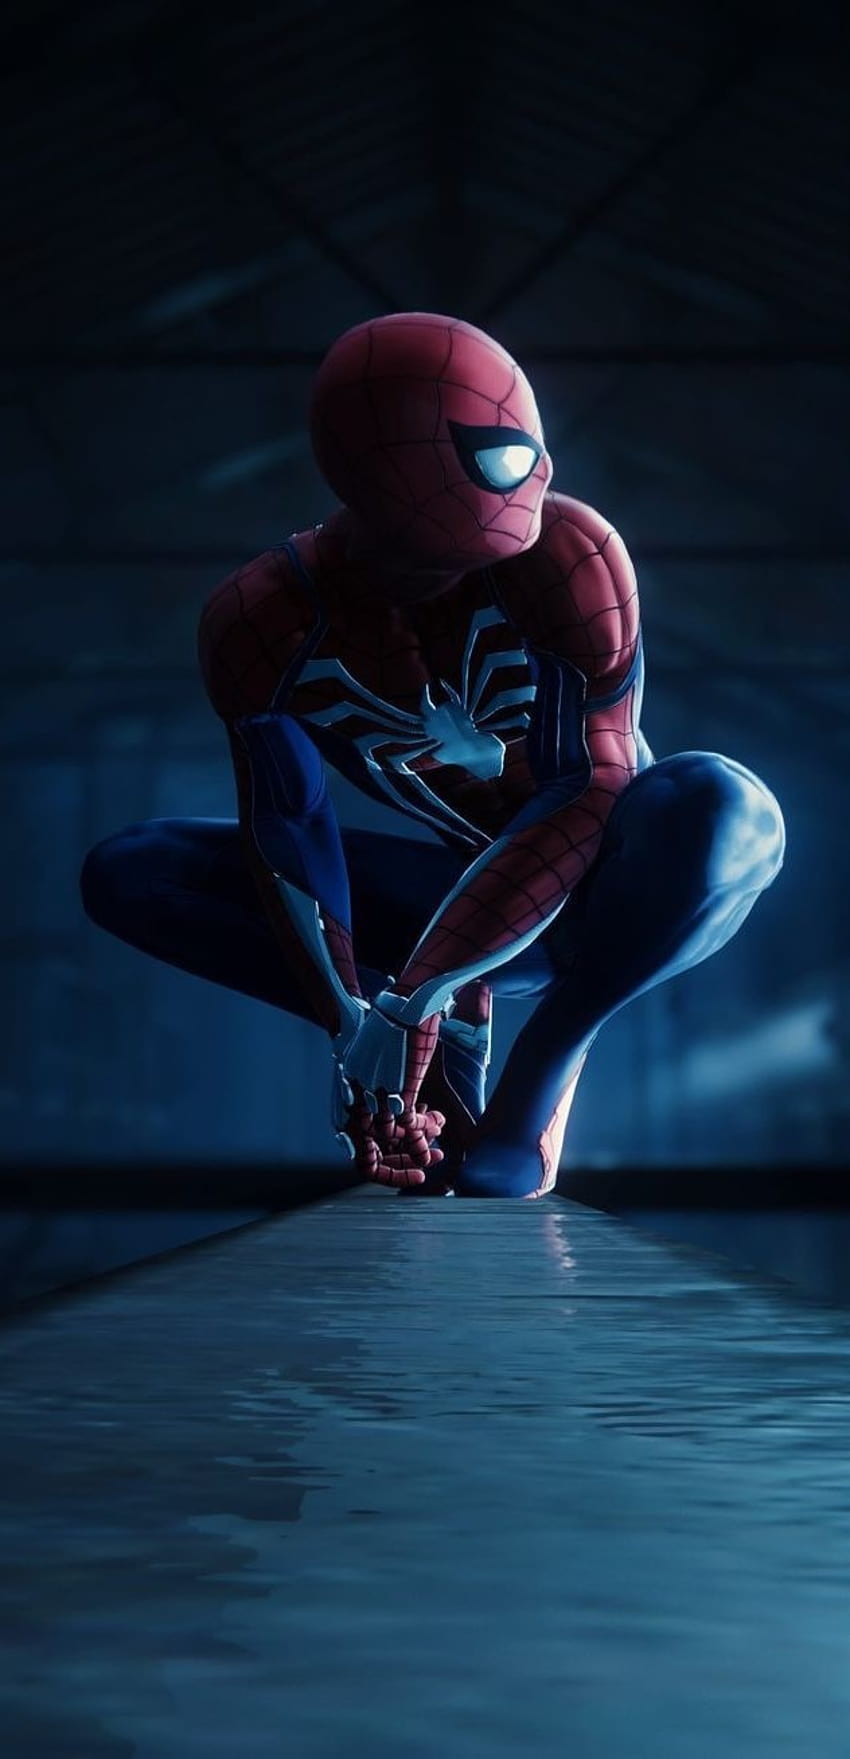 Download Spiderman Overlooking City 4k Marvel Iphone Wallpaper | Wallpapers .com